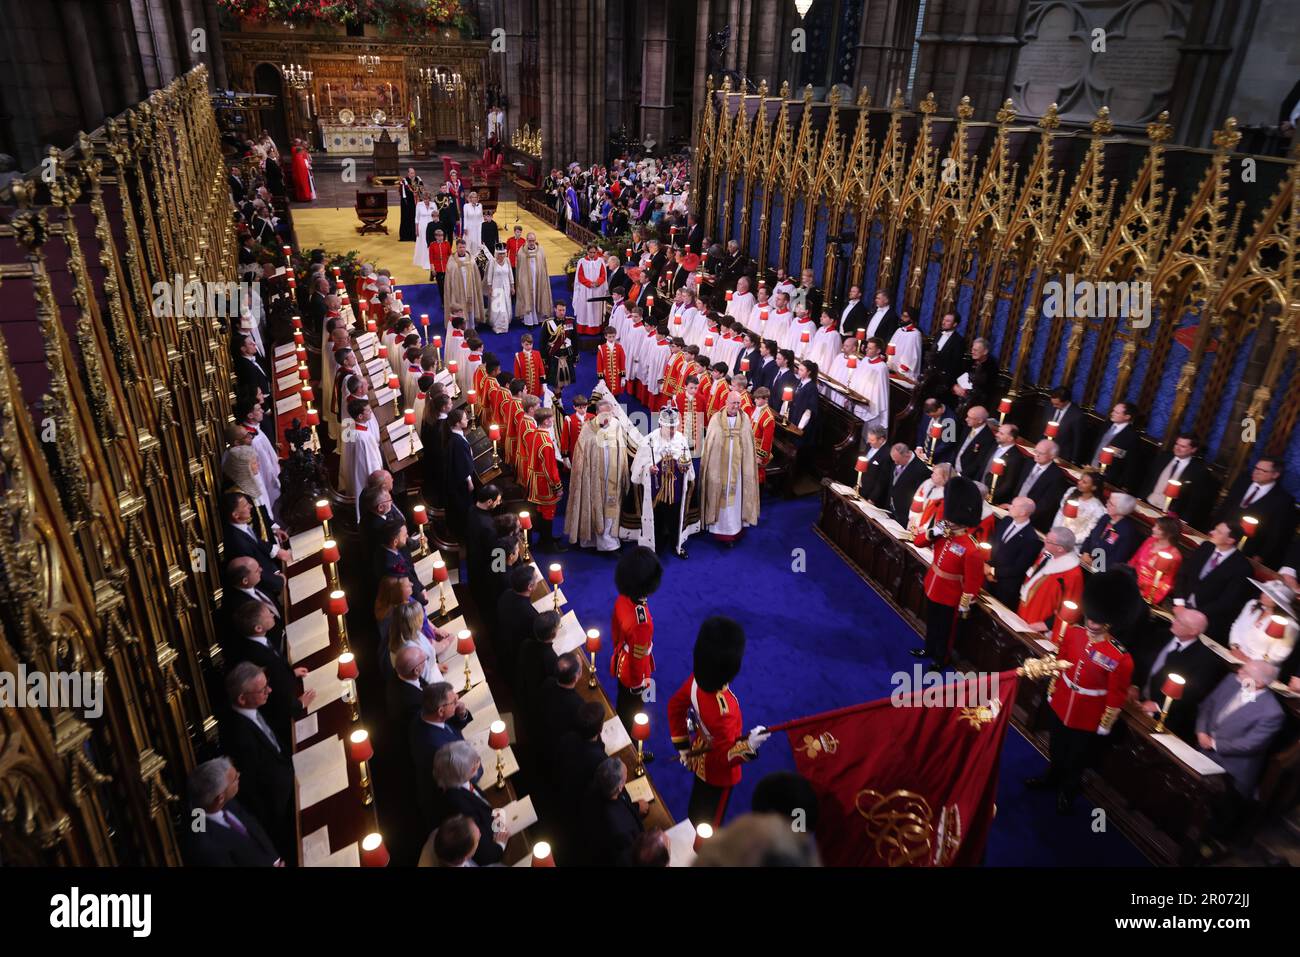 Le roi Charles III lors de son couronnement à l'abbaye de Westminster, Londres. Date de la photo: Samedi 6 mai 2023. Banque D'Images